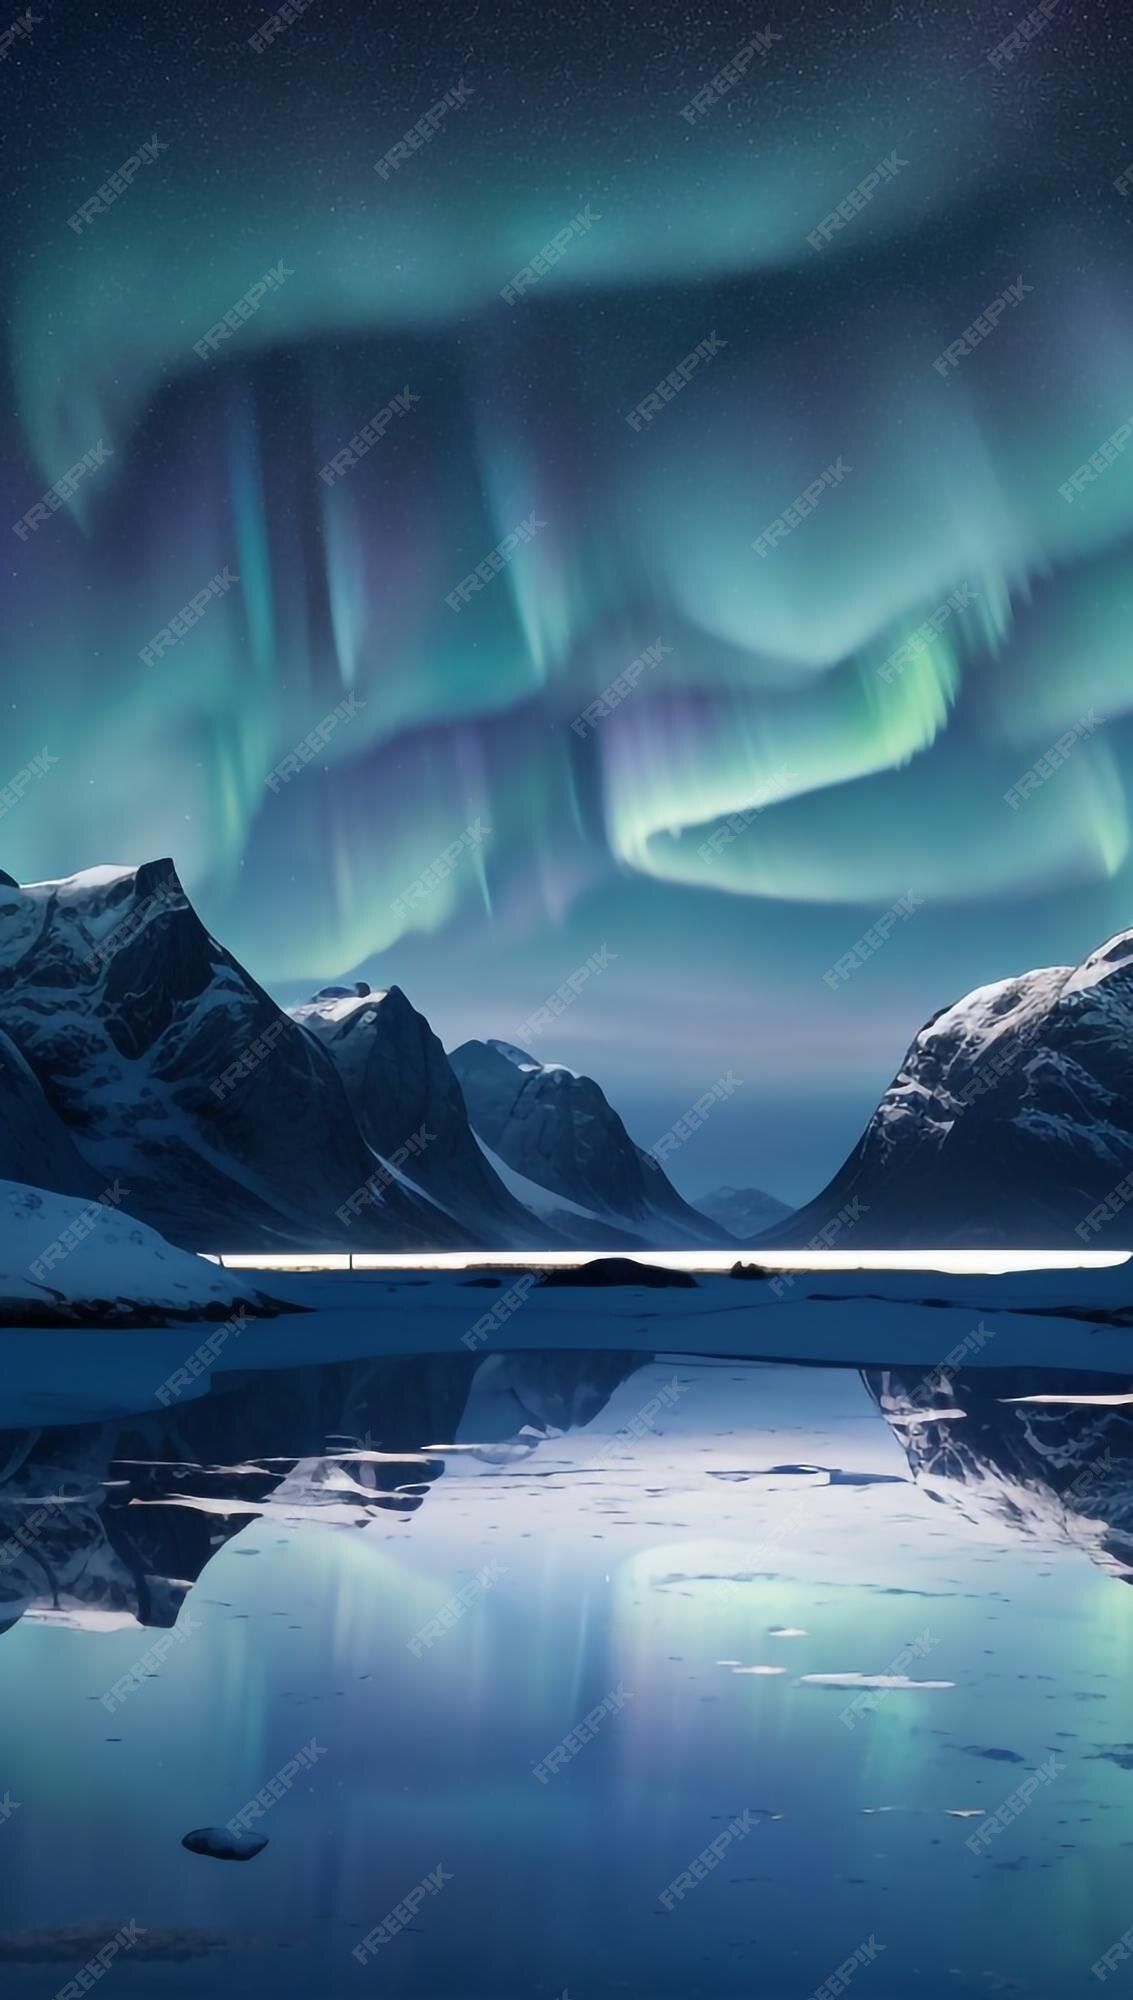  Polarlicht Hintergrundbild 1133x2000. Seite 2. Fotos Nacht, Über 94.000 hochqualitative kostenlose Stockfotos